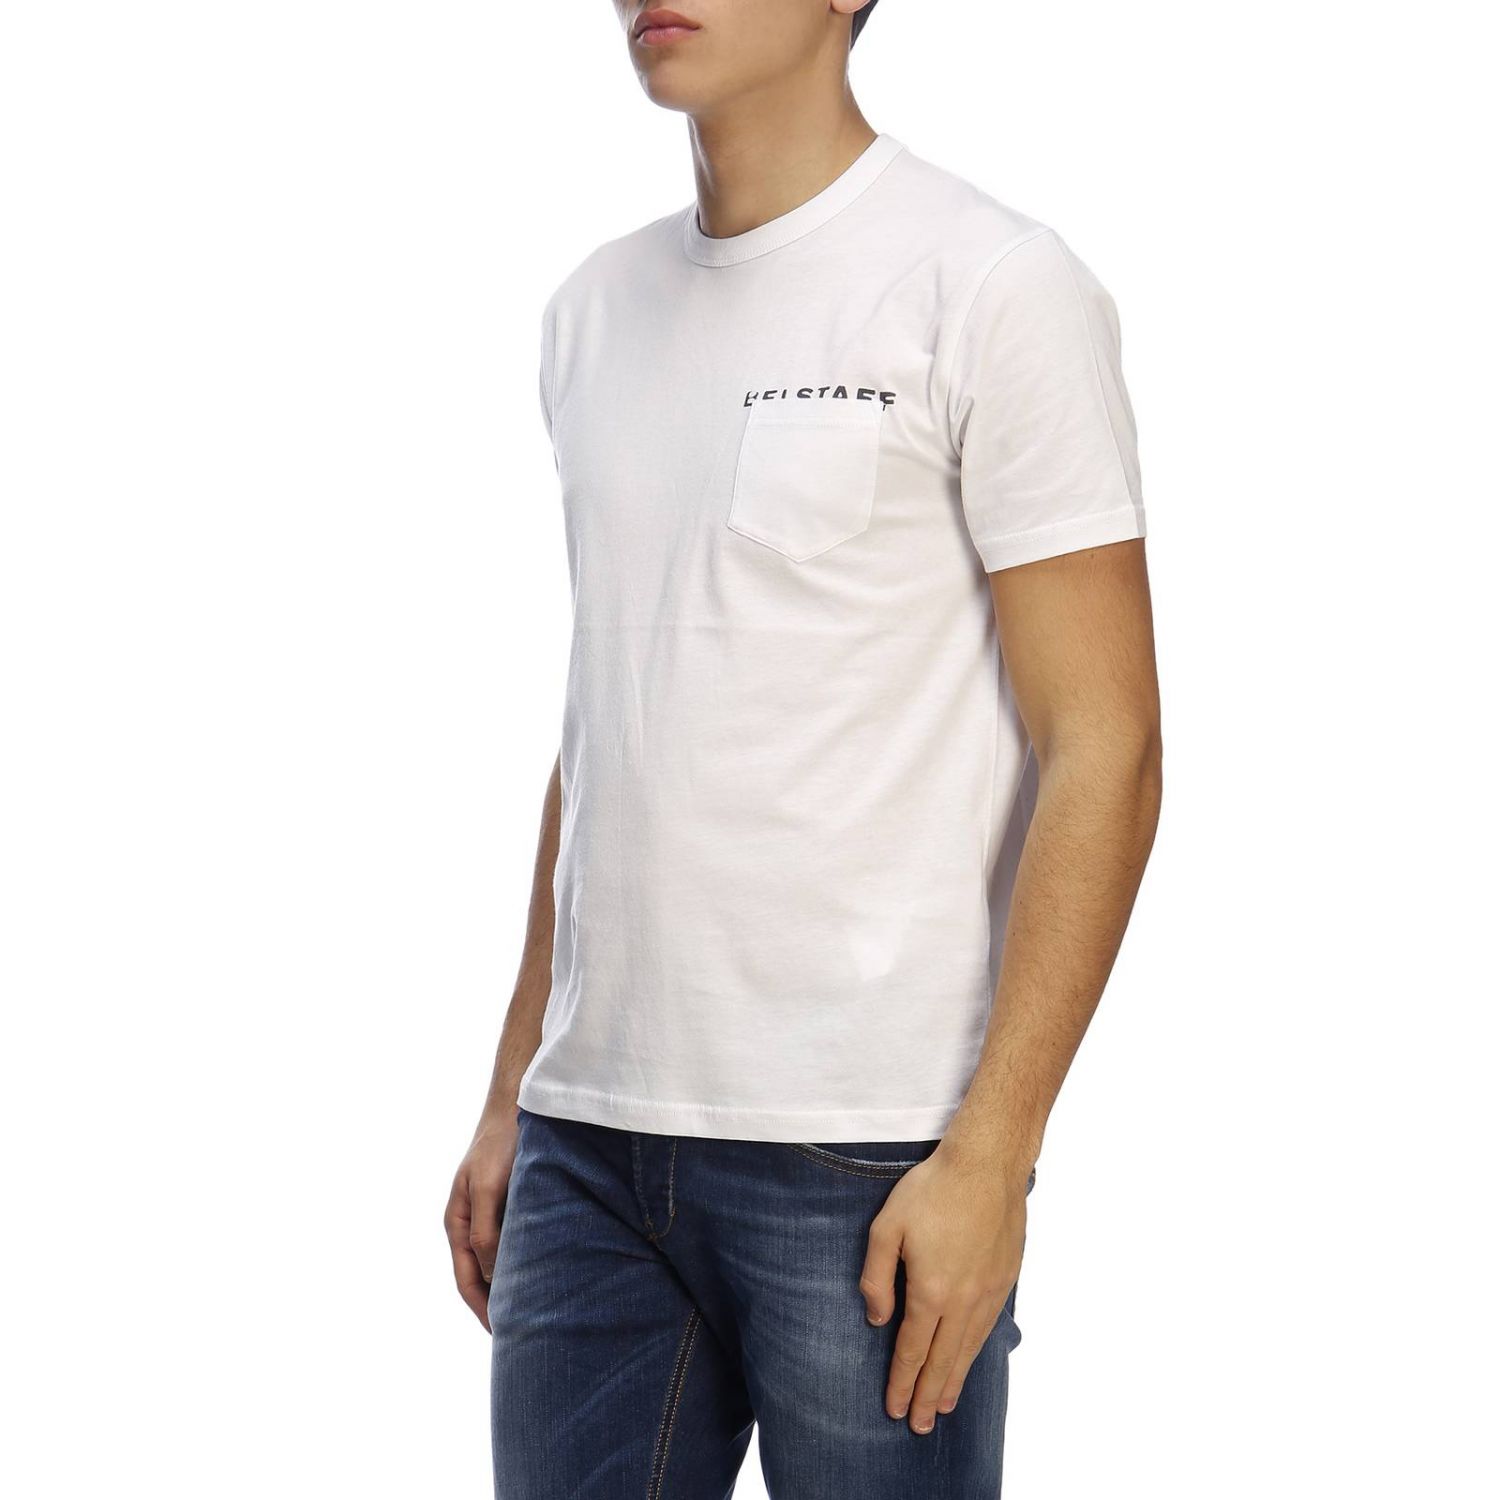 Belstaff Outlet: T-shirt men - White | T-Shirt Belstaff 71140226 ...